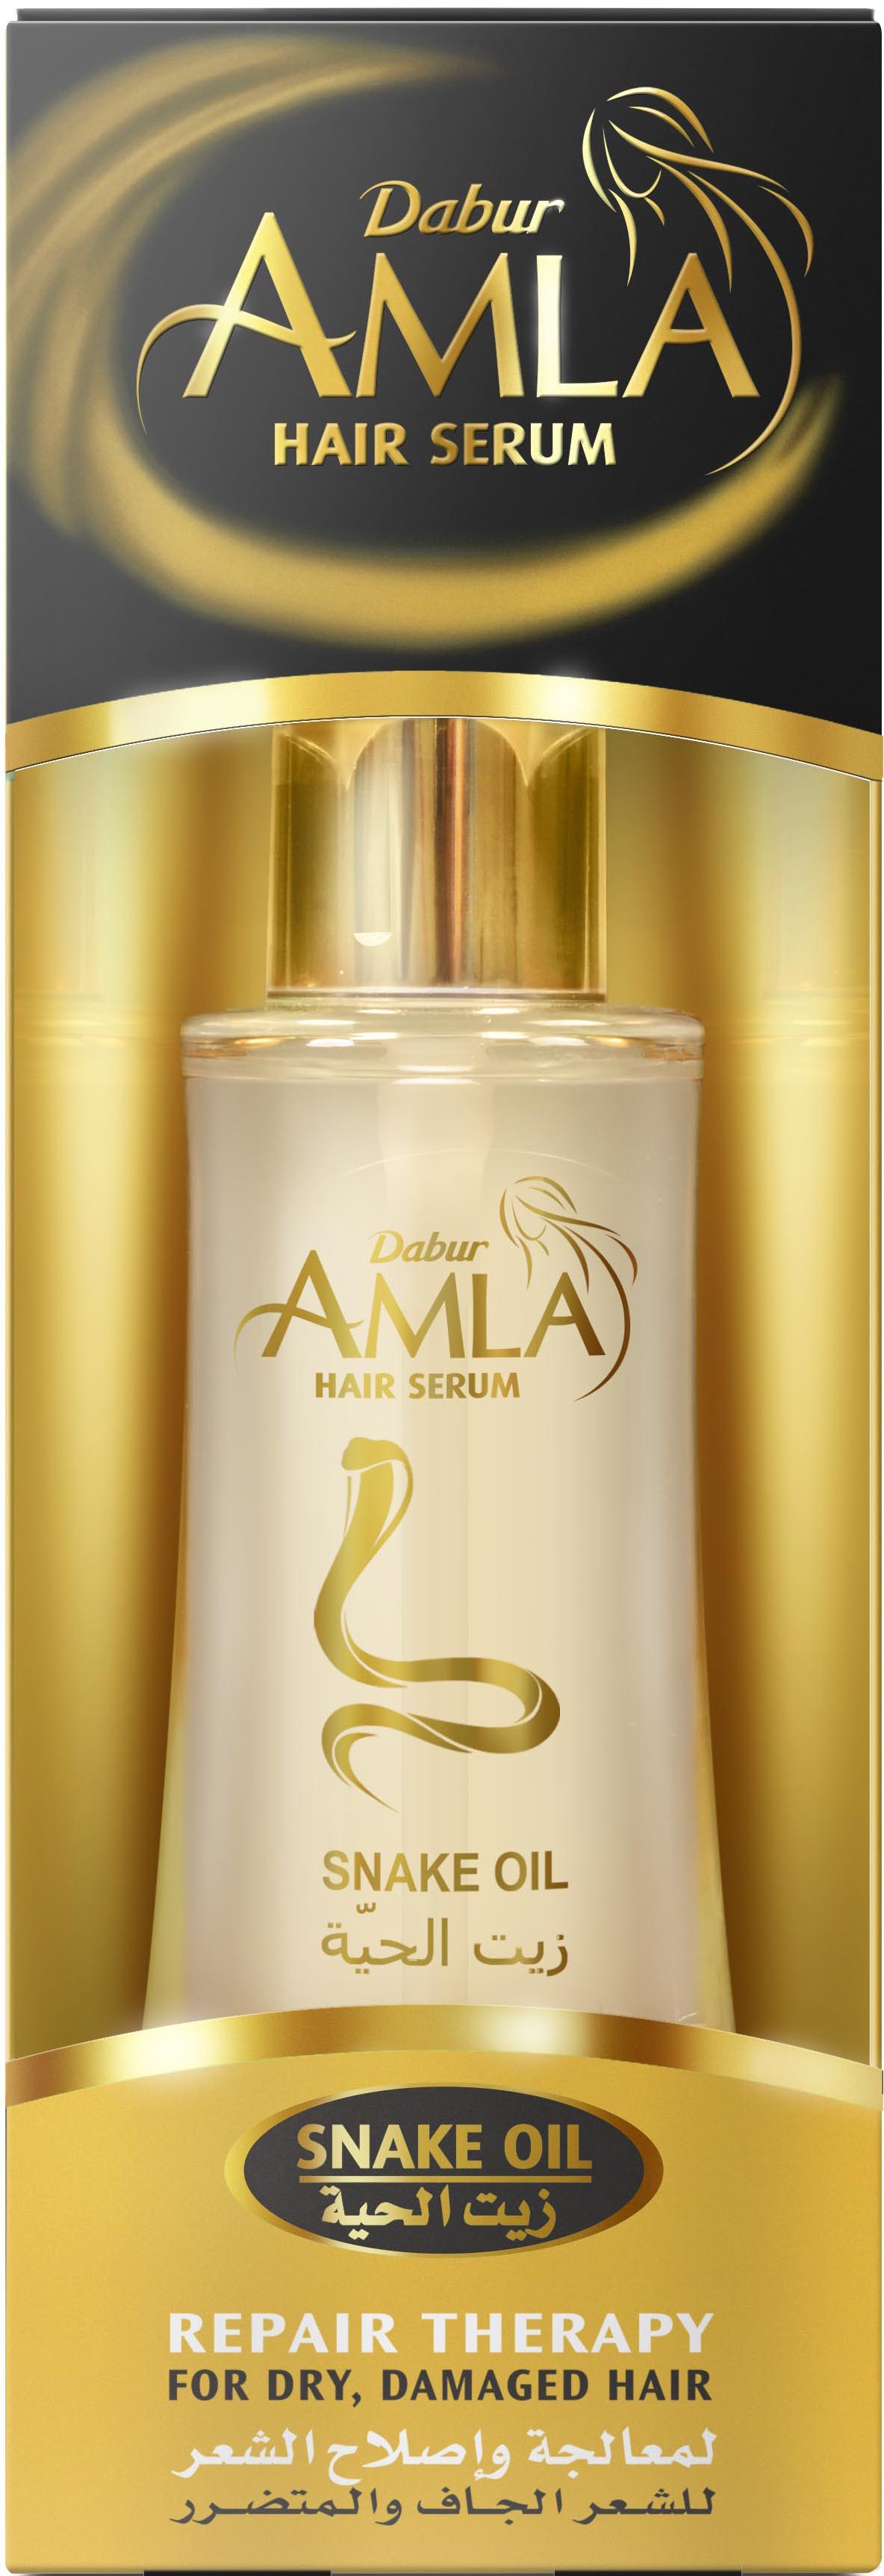 Сыворотка для волос Dabur AMLA Serum Repair Therapy Восстанавливающая терапия сыворотка для волос chocolatte протеиновая для поврежденных и ломких волос 200 мл